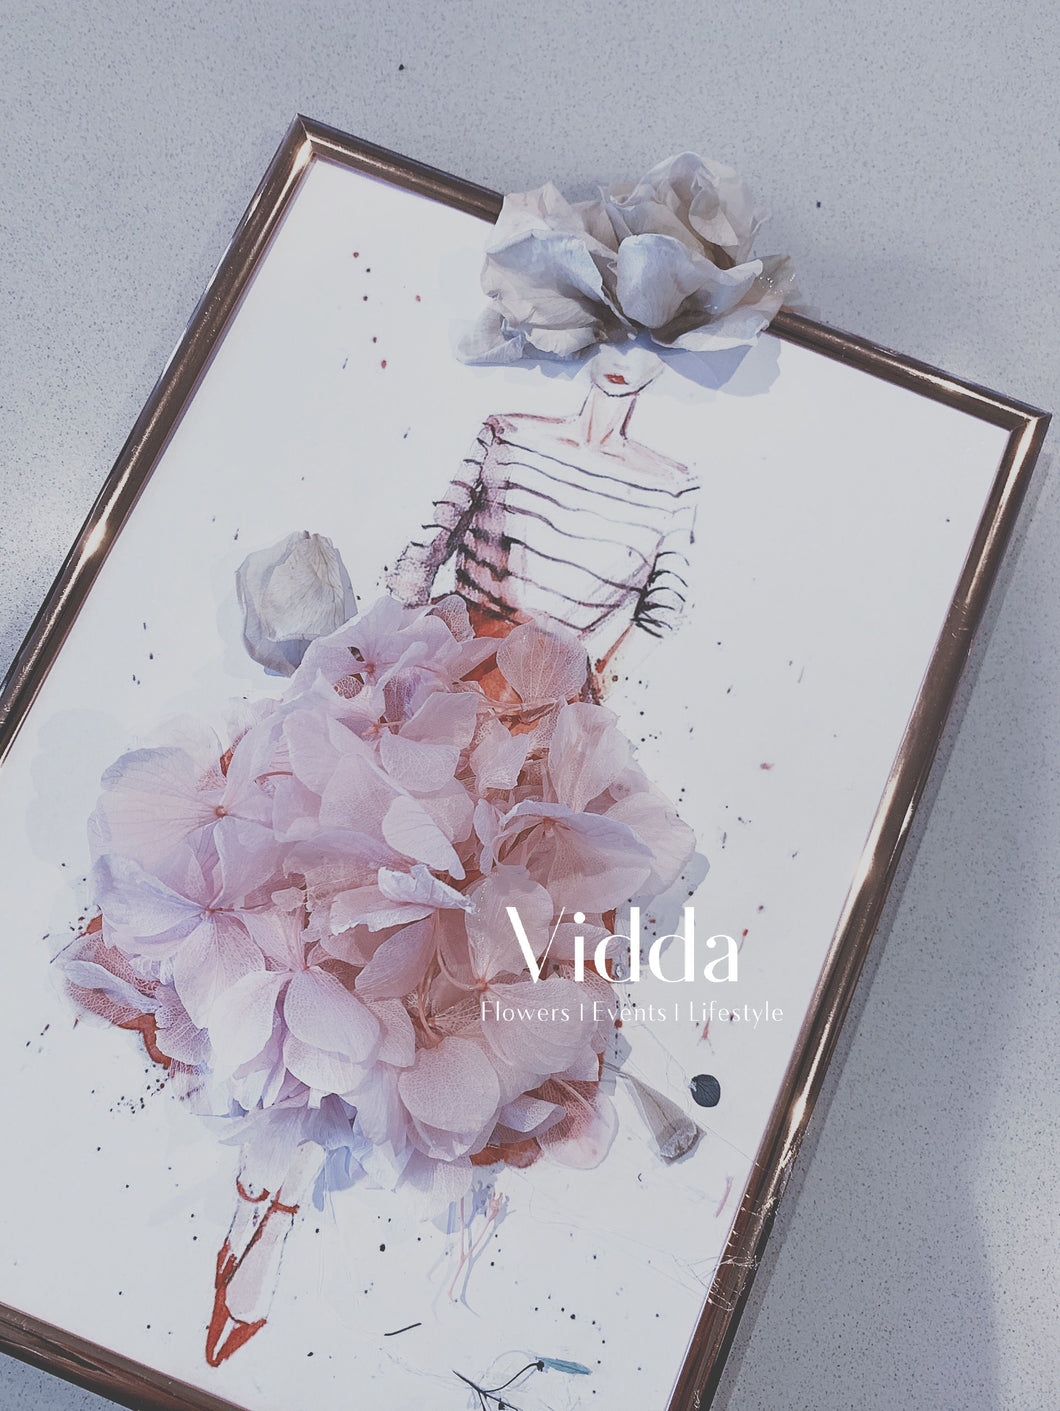 Preserved & Dried Floral Art Workshop - VIDDA